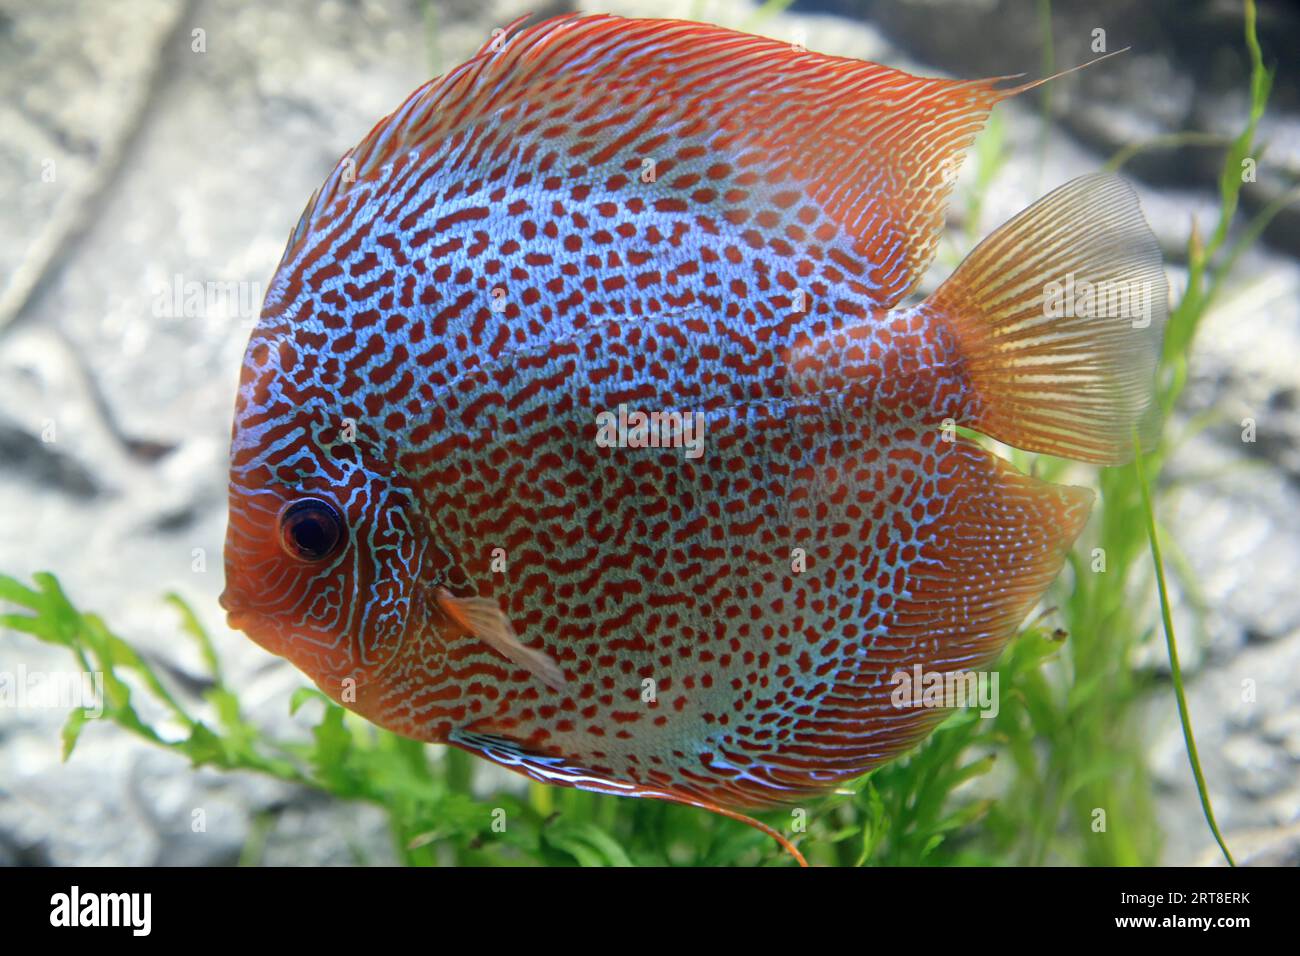 Discus fish (Symphysodon), Discus fish aequifasciatus Stock Photo